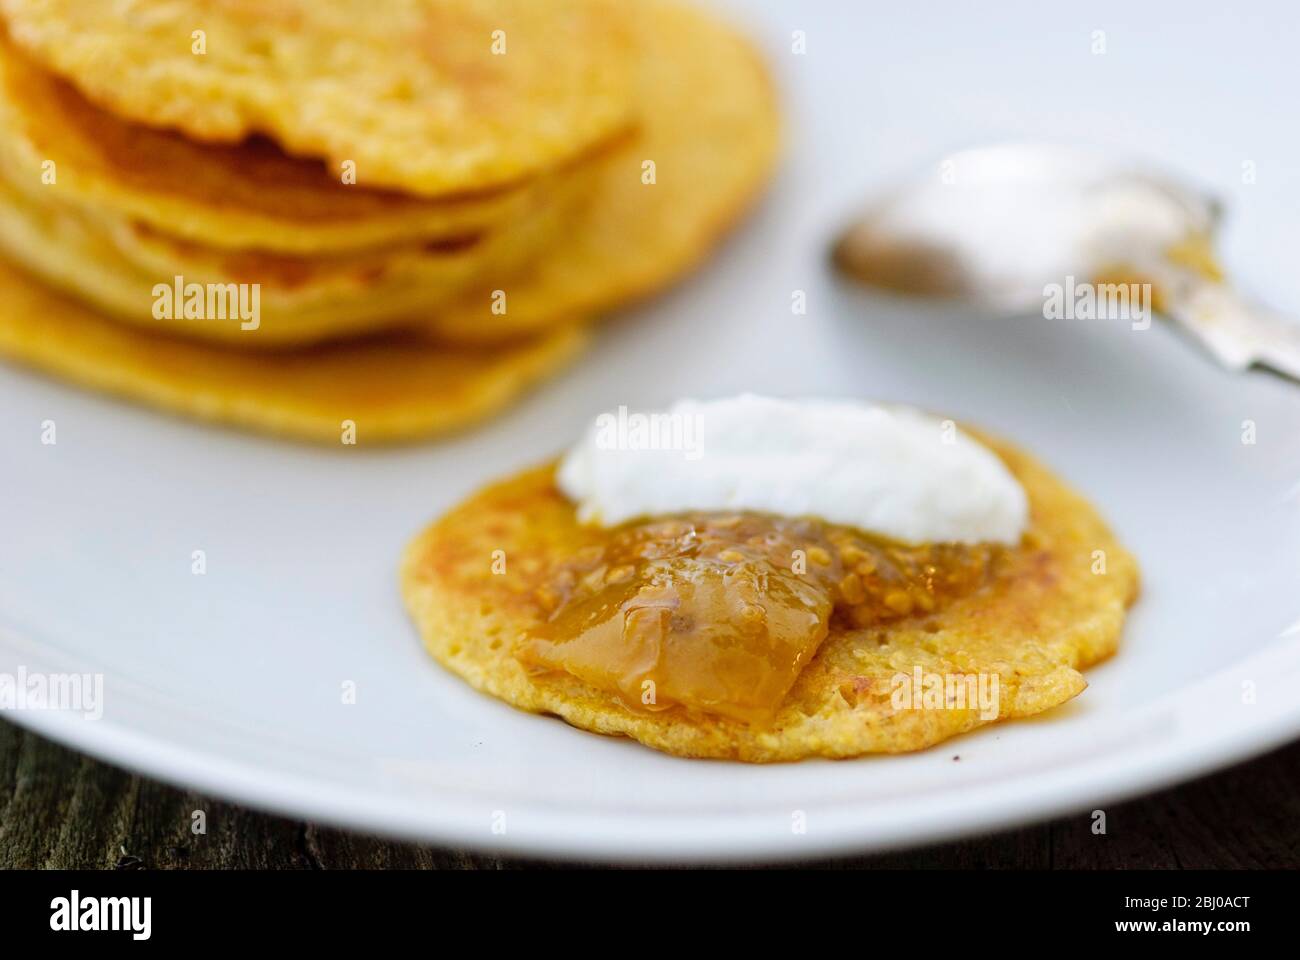 Kleine Pfannkuchen aus indischem Kichererbsenmehl (Chana dal), glutenfrei und sehr nahrhaft. Serviert mit Limettenchutney und Joghurt Stockfoto